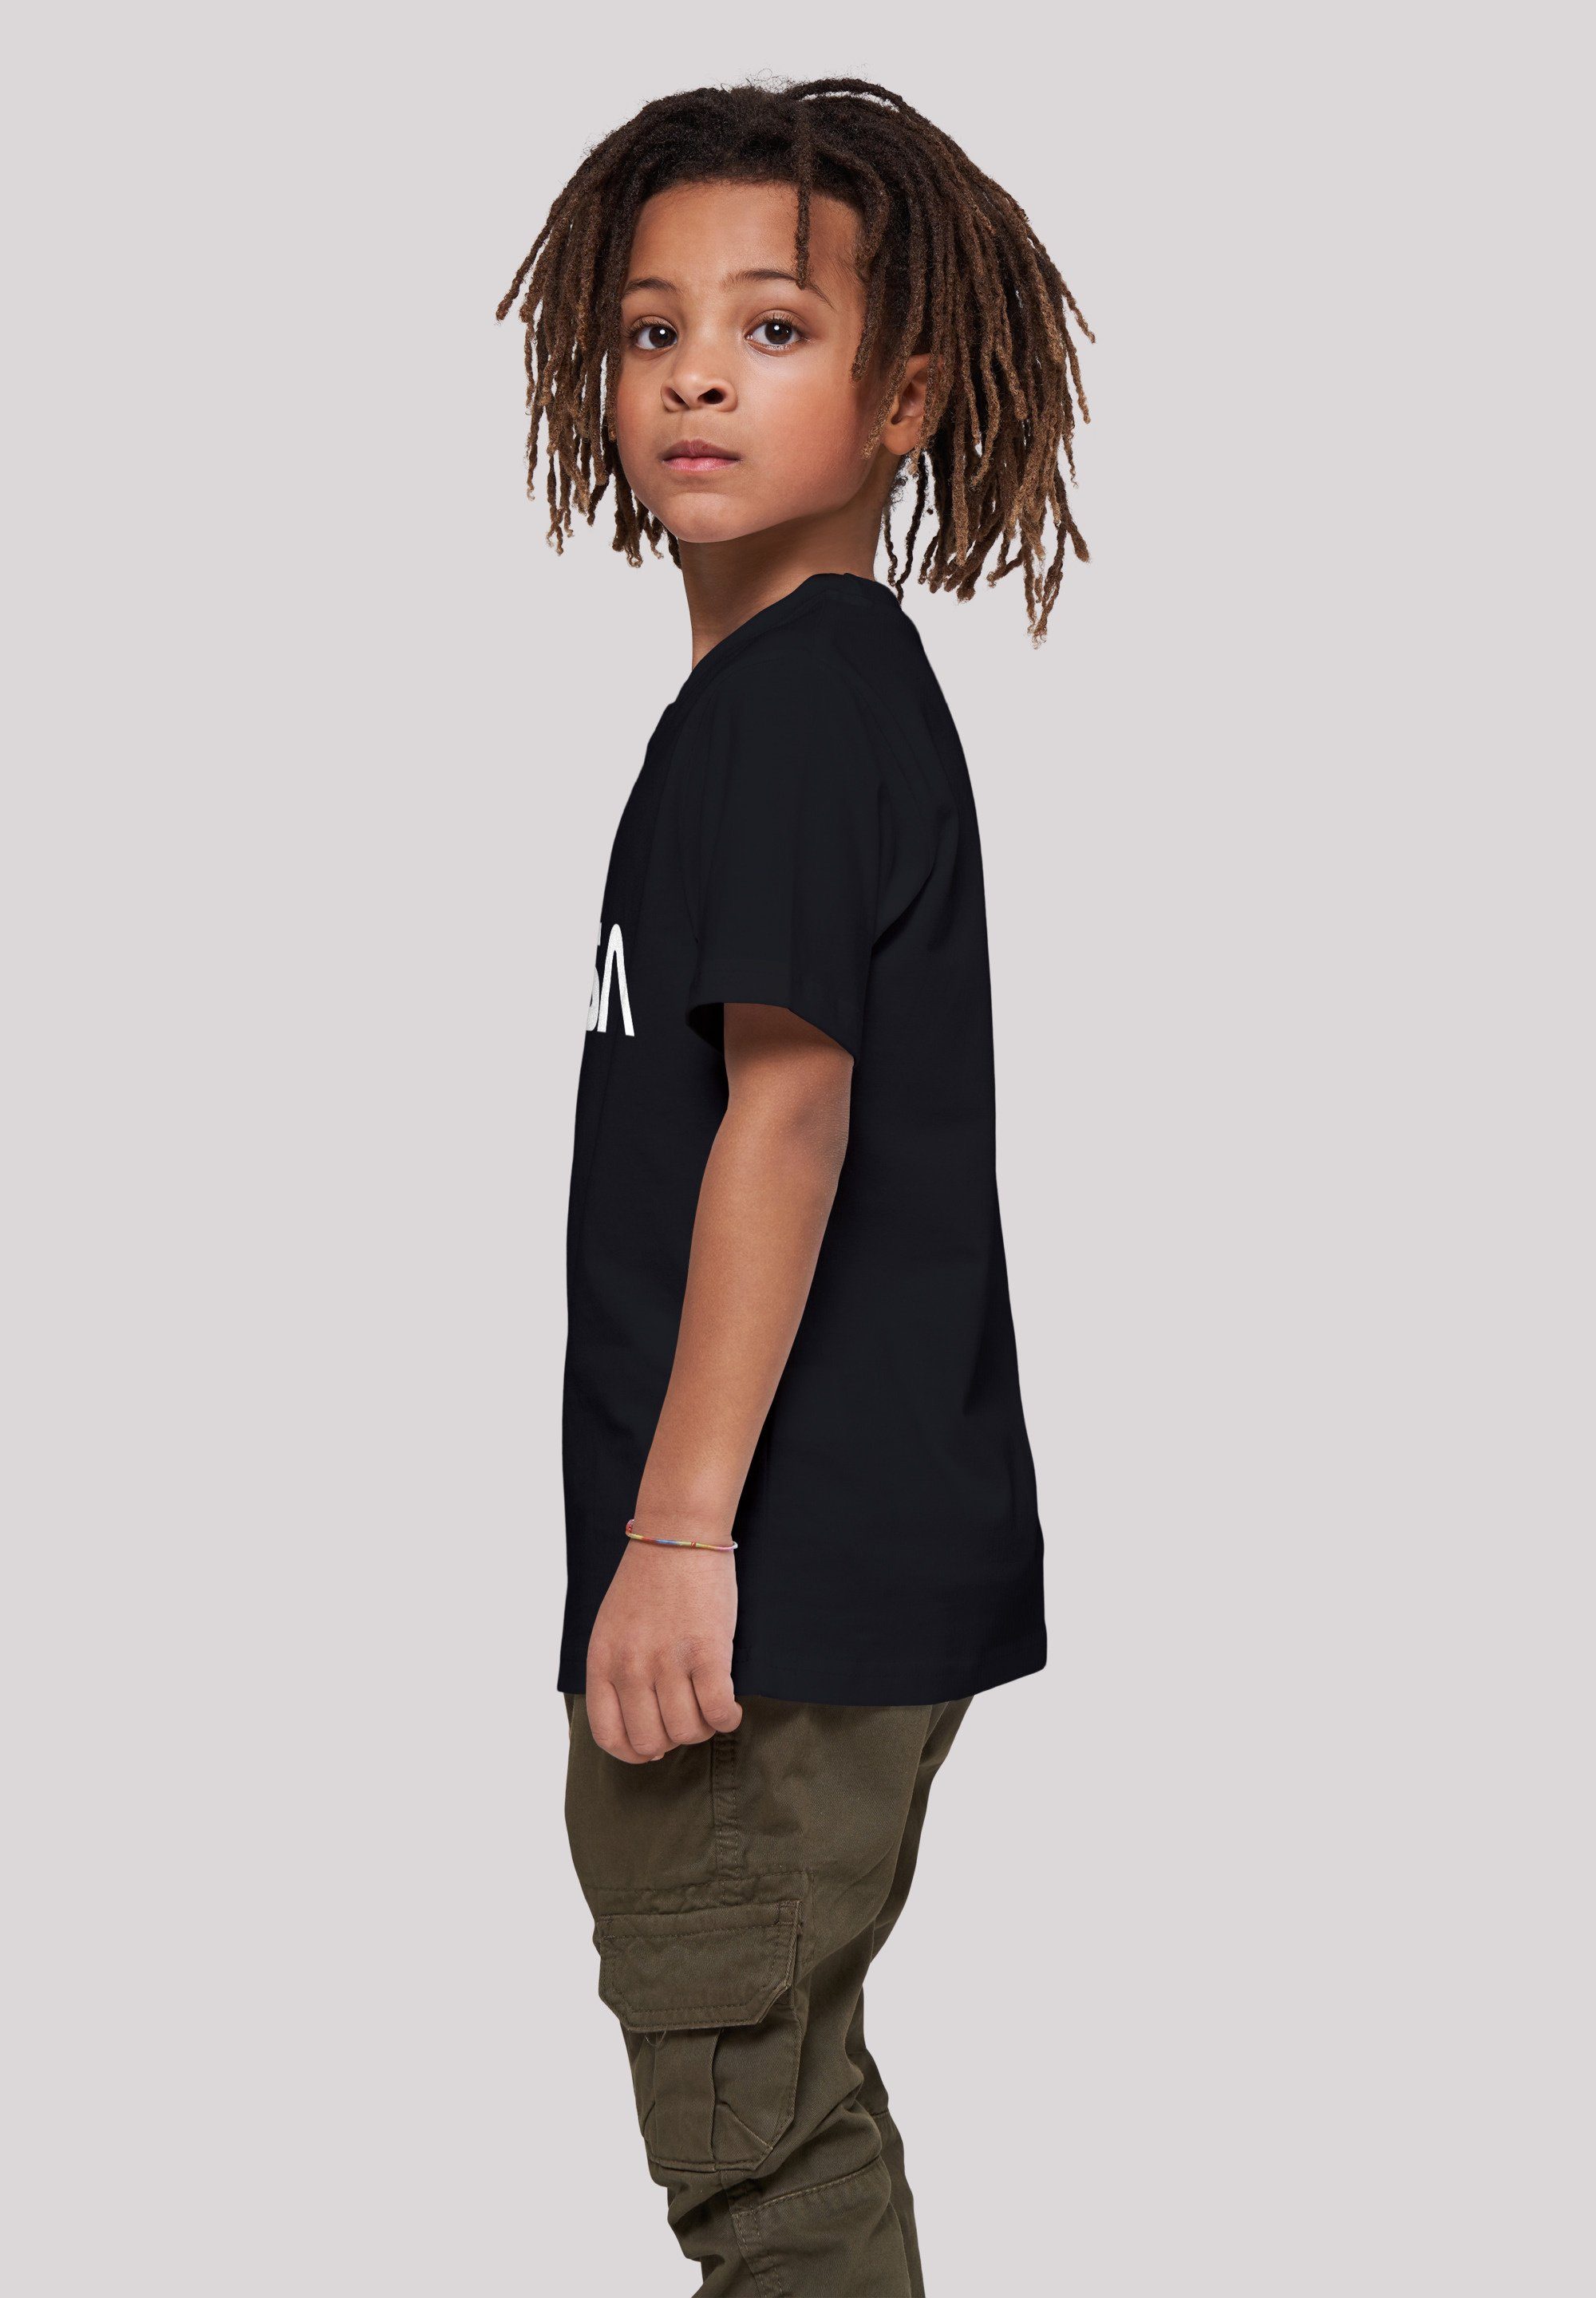 Unisex Black Modern F4NT4STIC NASA Kinder,Premium Logo T-Shirt Merch,Jungen,Mädchen,Bedruckt